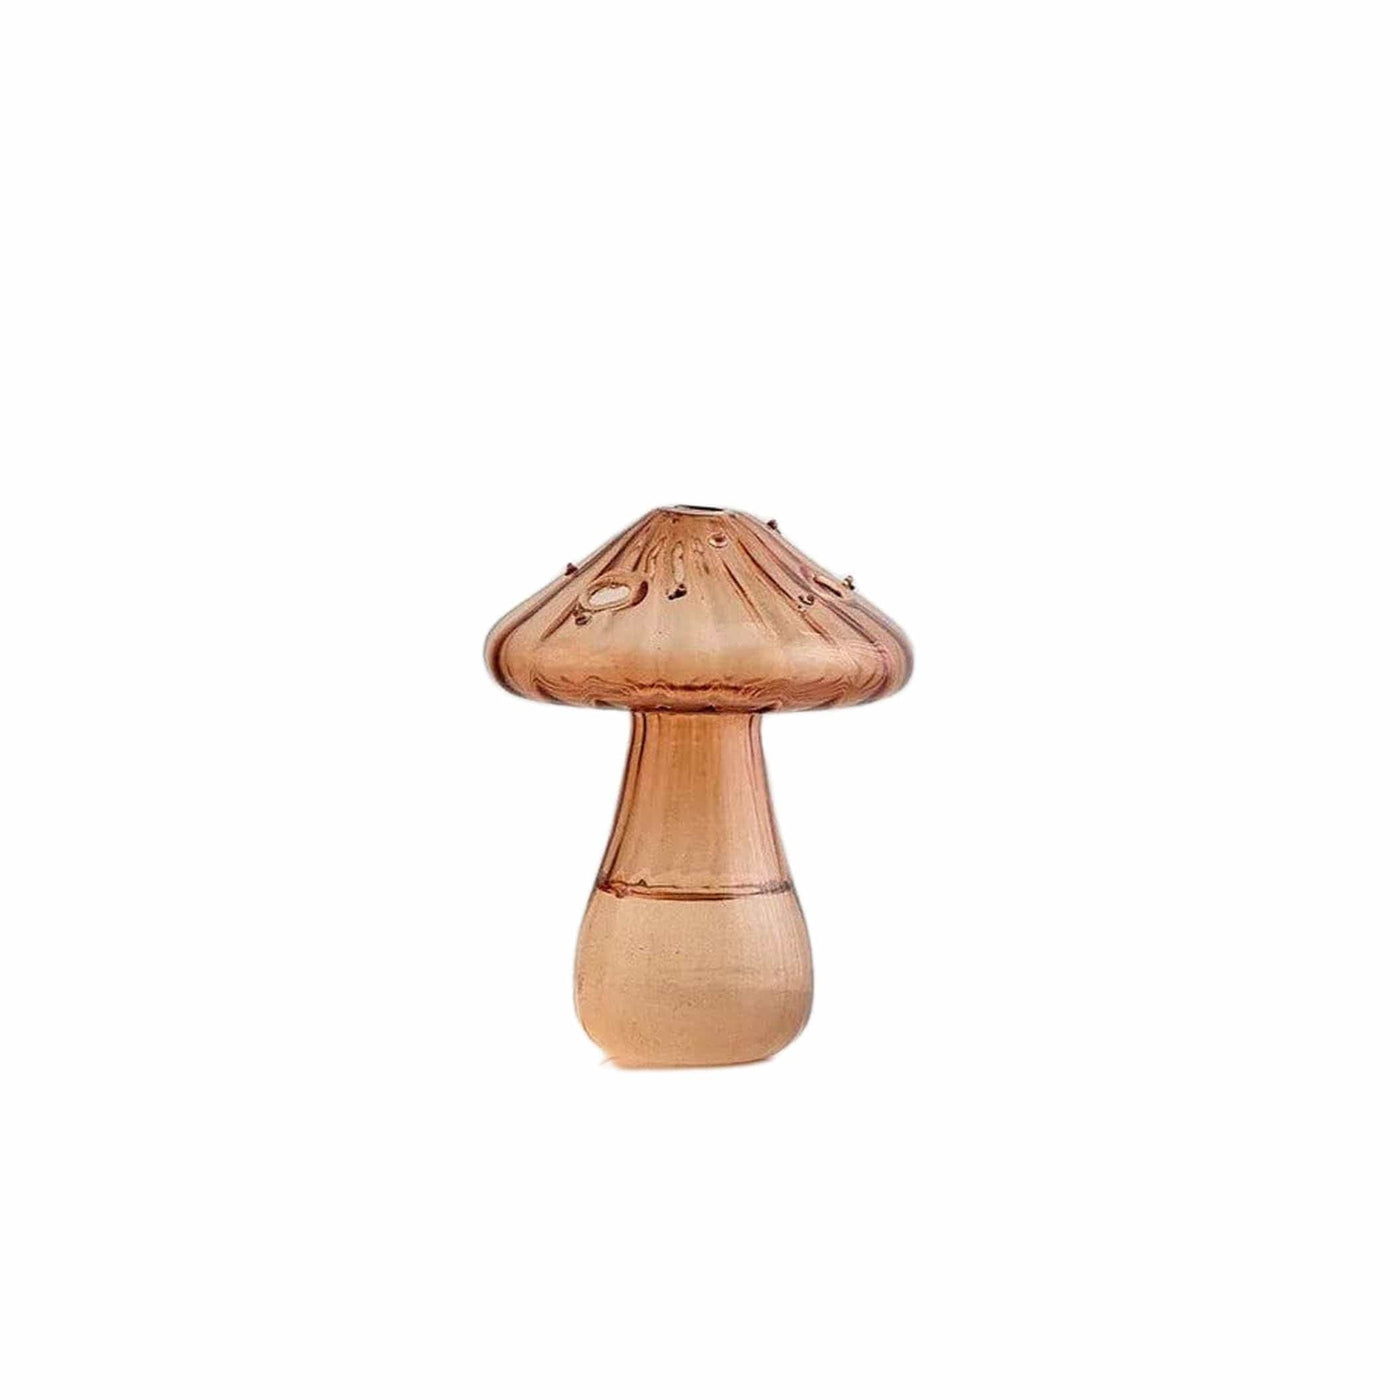 Créez une atmosphère enchantée dans votre maison avec les vases Champignon en verre de Filtrum Home. Leur design unique en forme de champignon apporte une touche de magie à votre décoration.